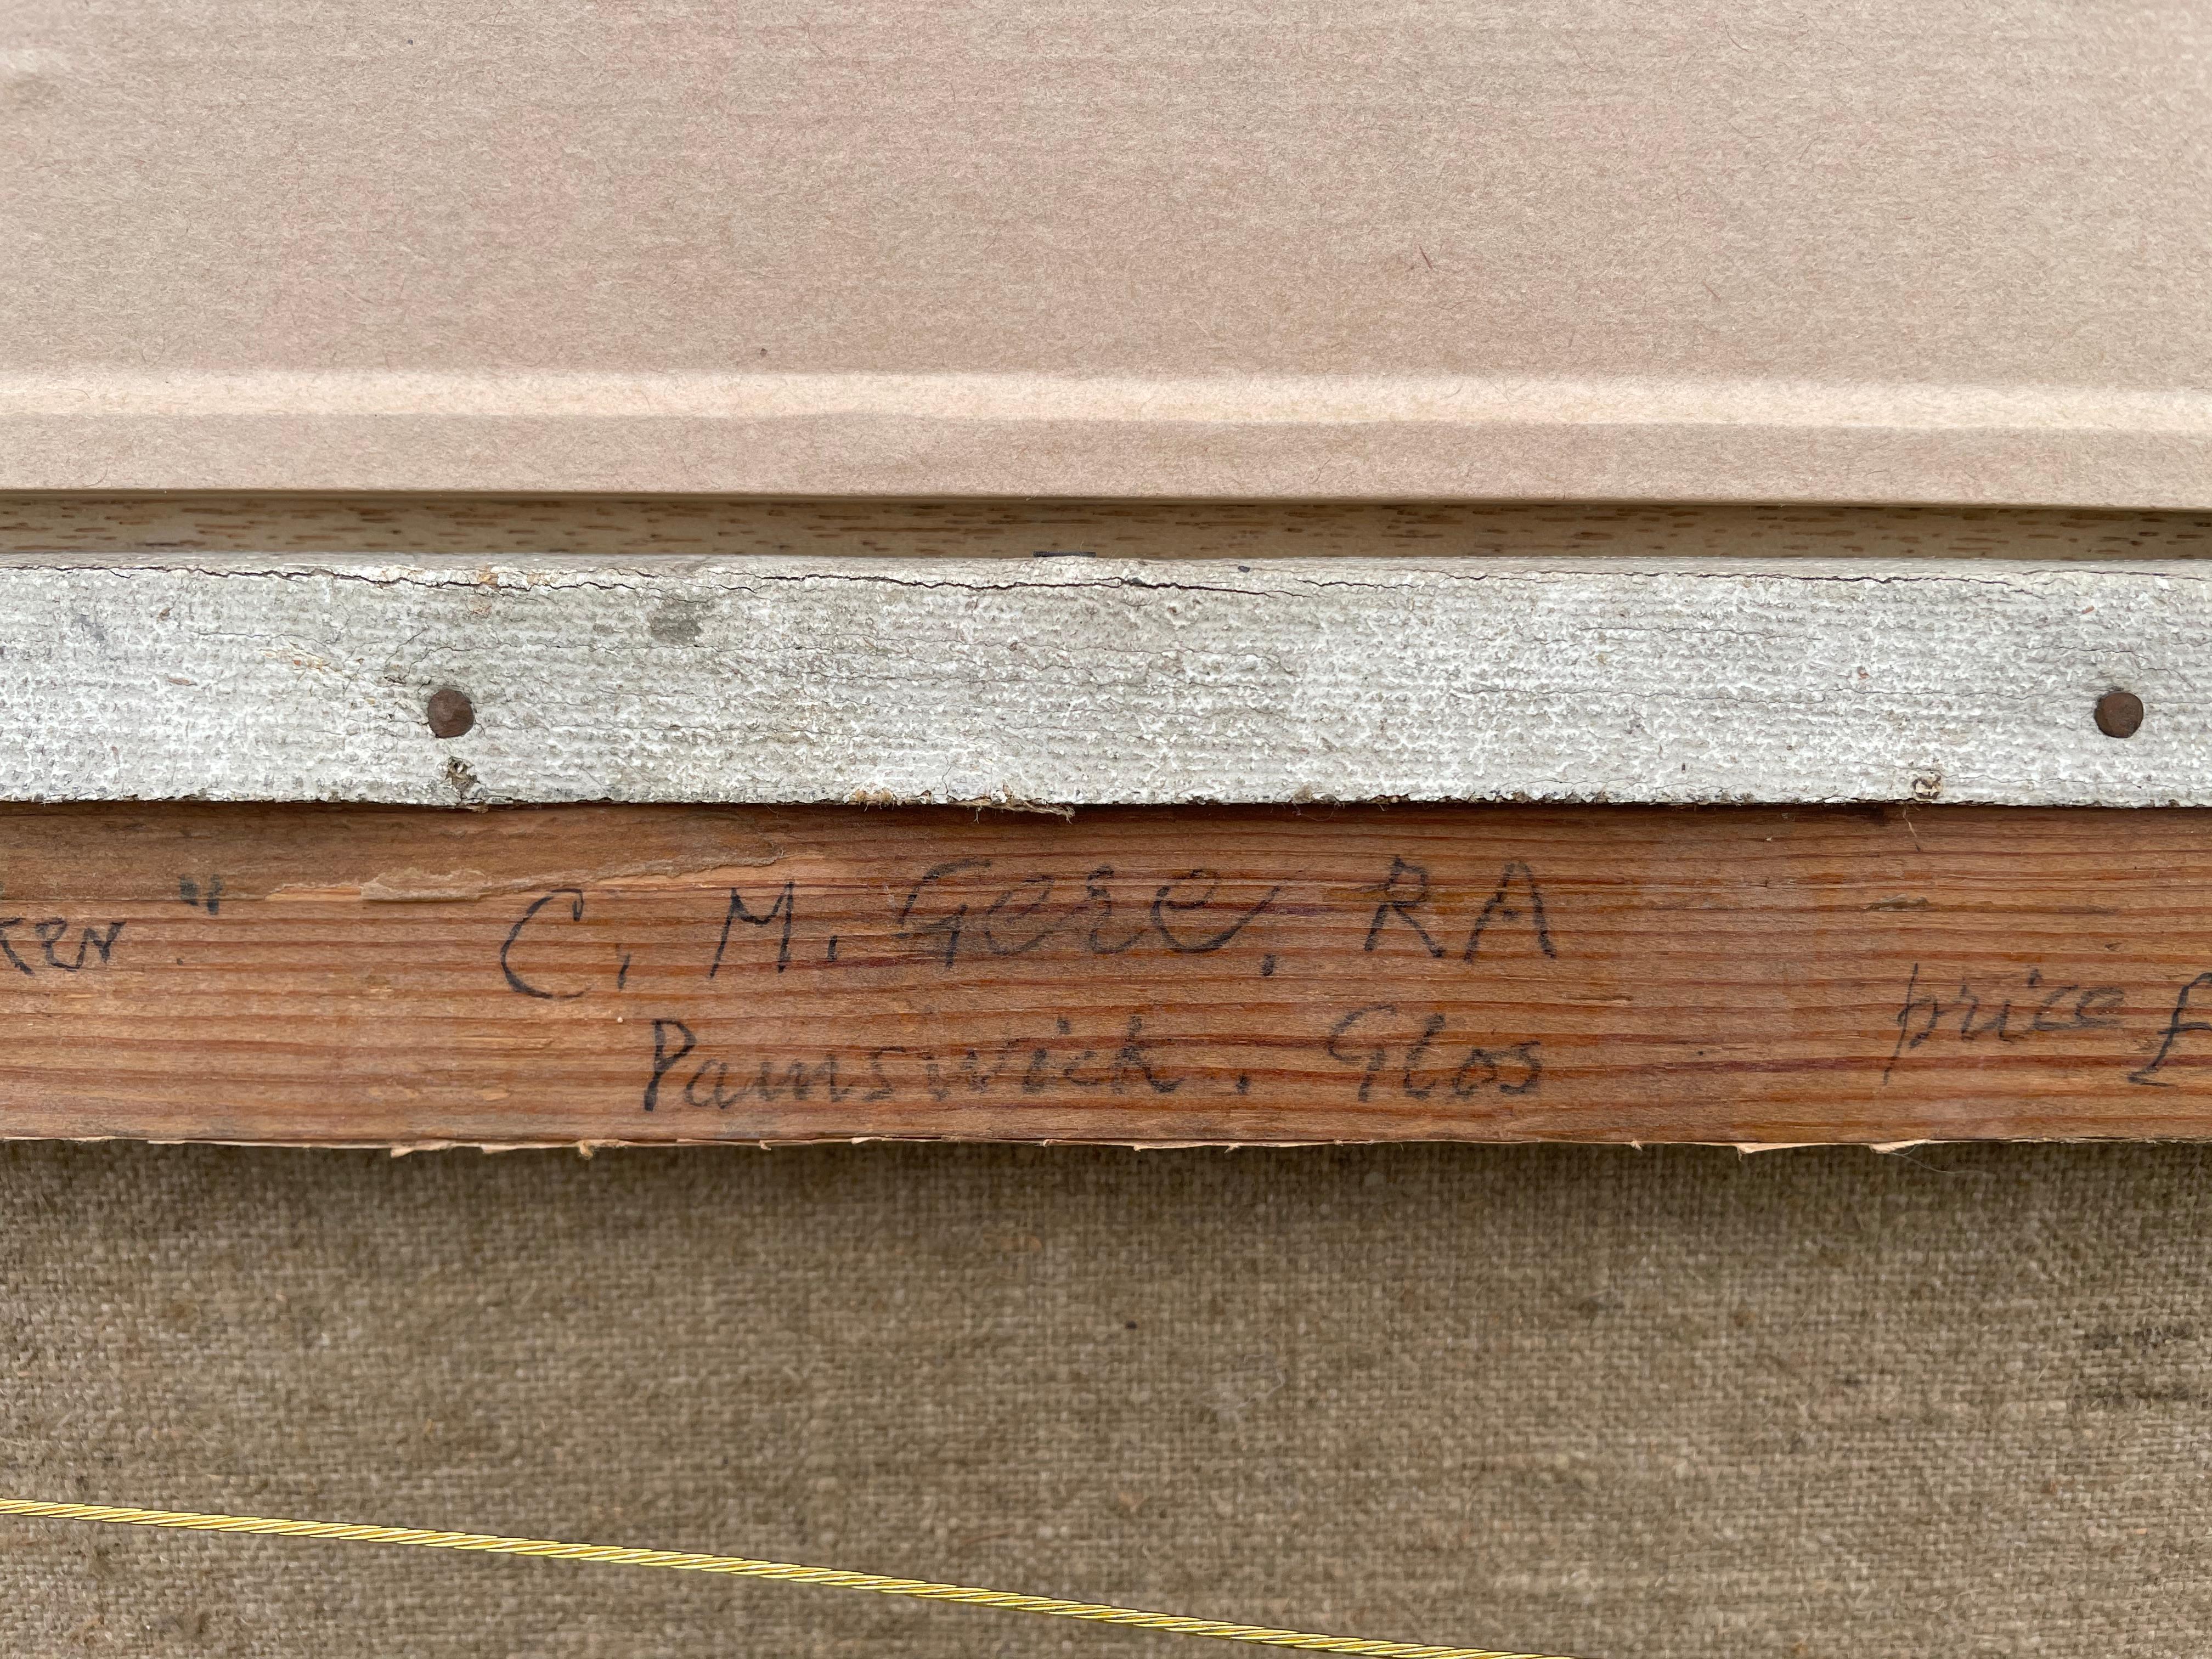 CHARLES MARCH GERE, RA, RWS
(1884-1963)

Ein Cotswold-Steinbrecher

Signiert l.l: CHARLES GERE; signiert und beschriftet mit Titel und Adresse des Künstlers auf dem Keilrahmen
Öl auf Leinwand

41 x 51 cm, 16 x 20 Zoll.
(Rahmengröße 55,5 x 65,5 cm.,